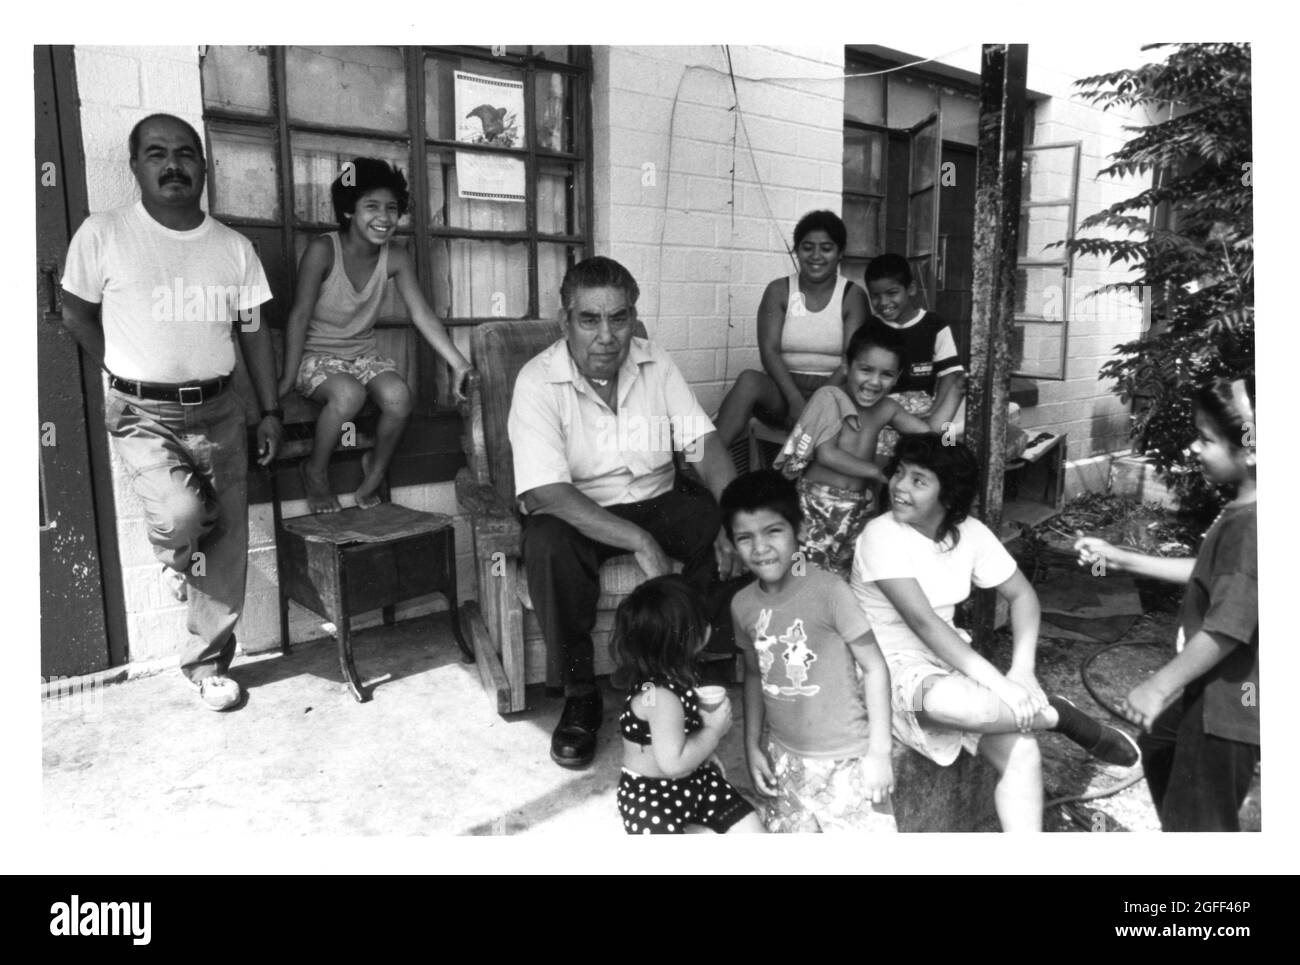 San Antonio, Texas, um 1990: Große hispanische Familie posiert vor ihrer Wohnung am Alazan-Apache Courts, dem ersten öffentlichen Wohnhaus von San Antonio, das 1939 erbaut wurde. Anfang der 1990er Jahre litt das Projekt unter schwerer Überfüllung. Original in Farbe ©Bob Daemmrich Stockfoto